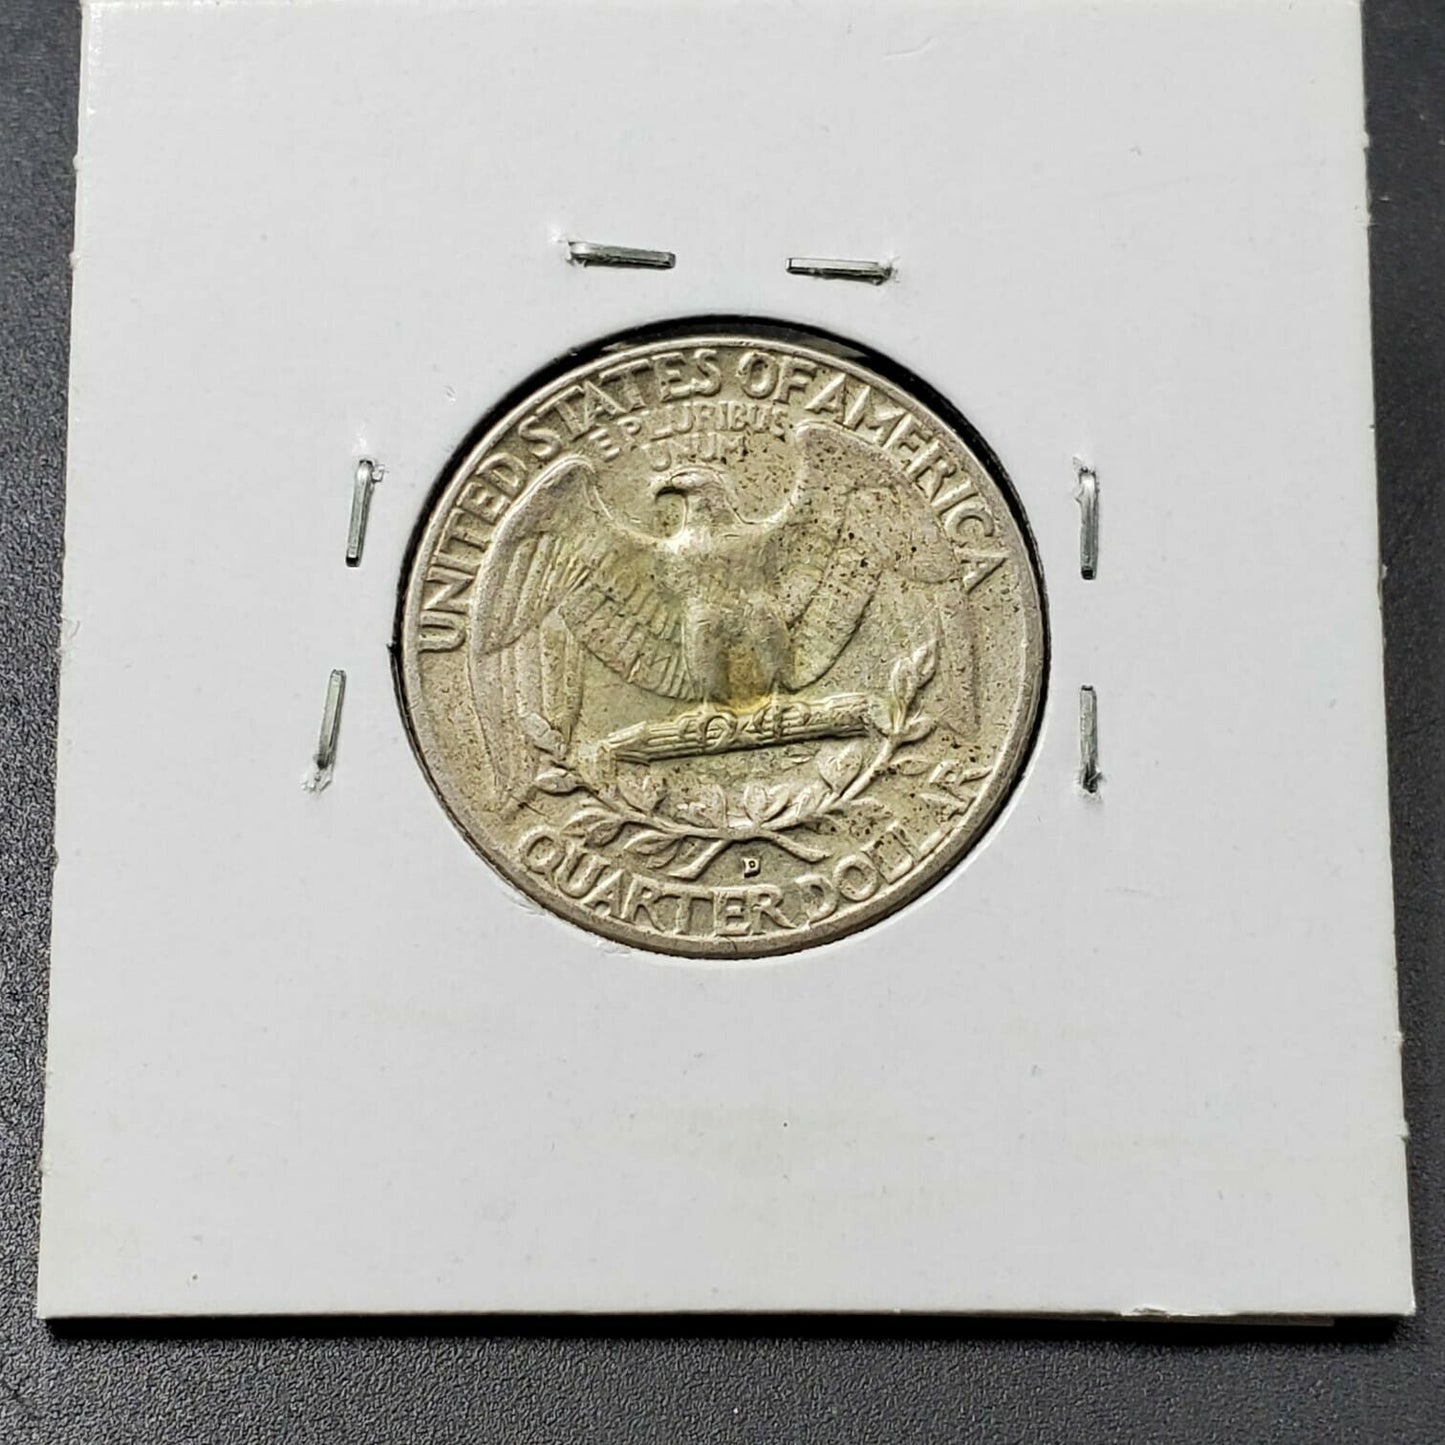 1960 D 25c Washington Silver Quarter Coin MAJOR PLANCHET LAMINATION ERROR